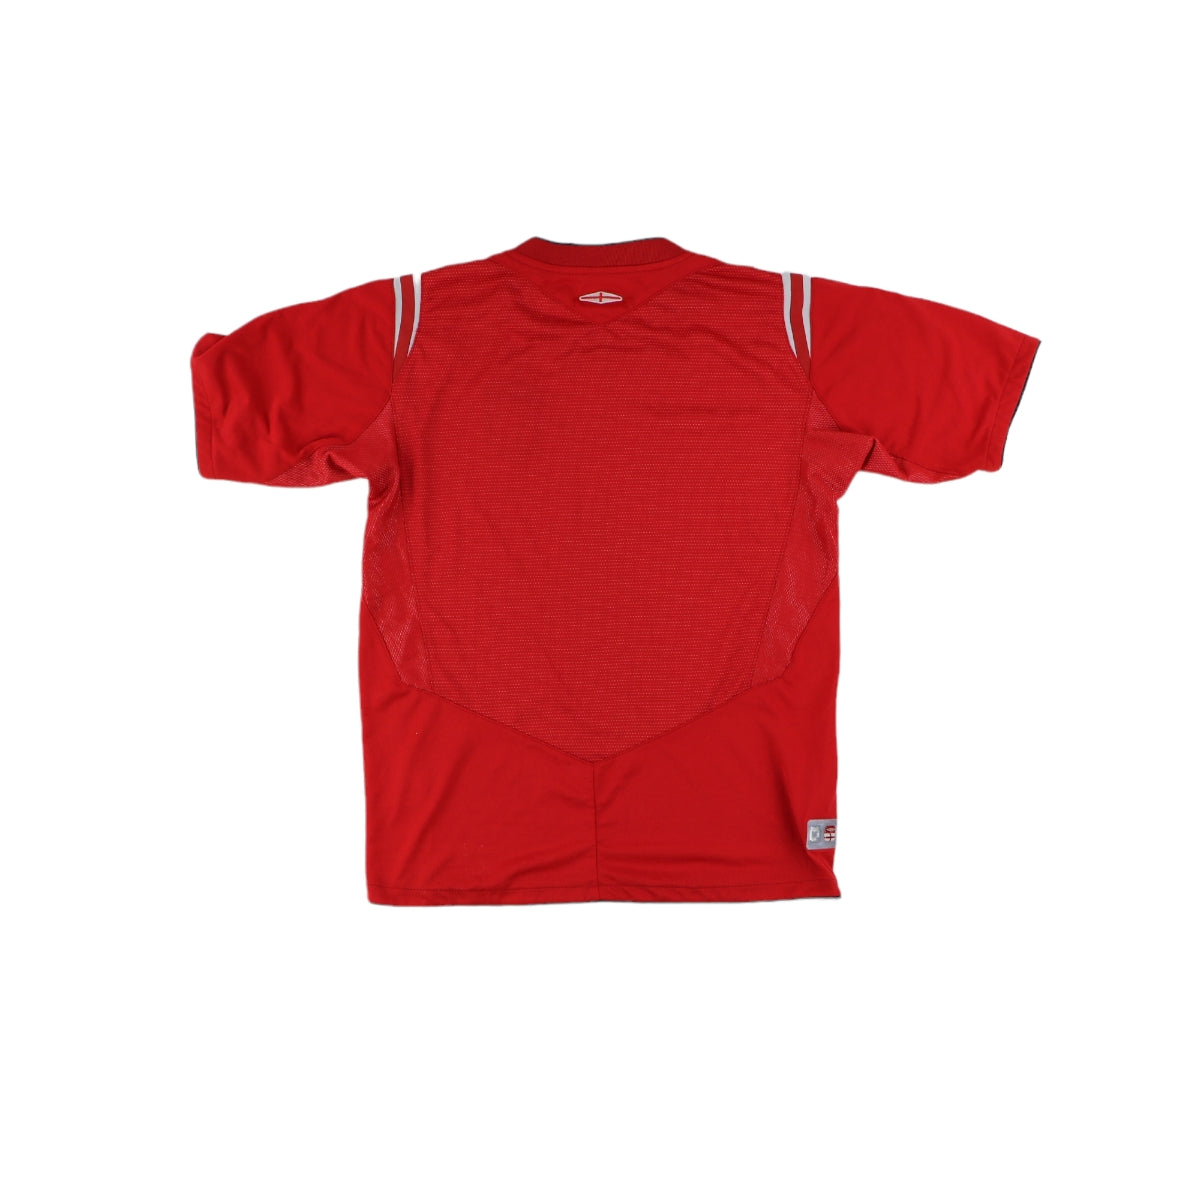 Umbro Football Shirt(XS)